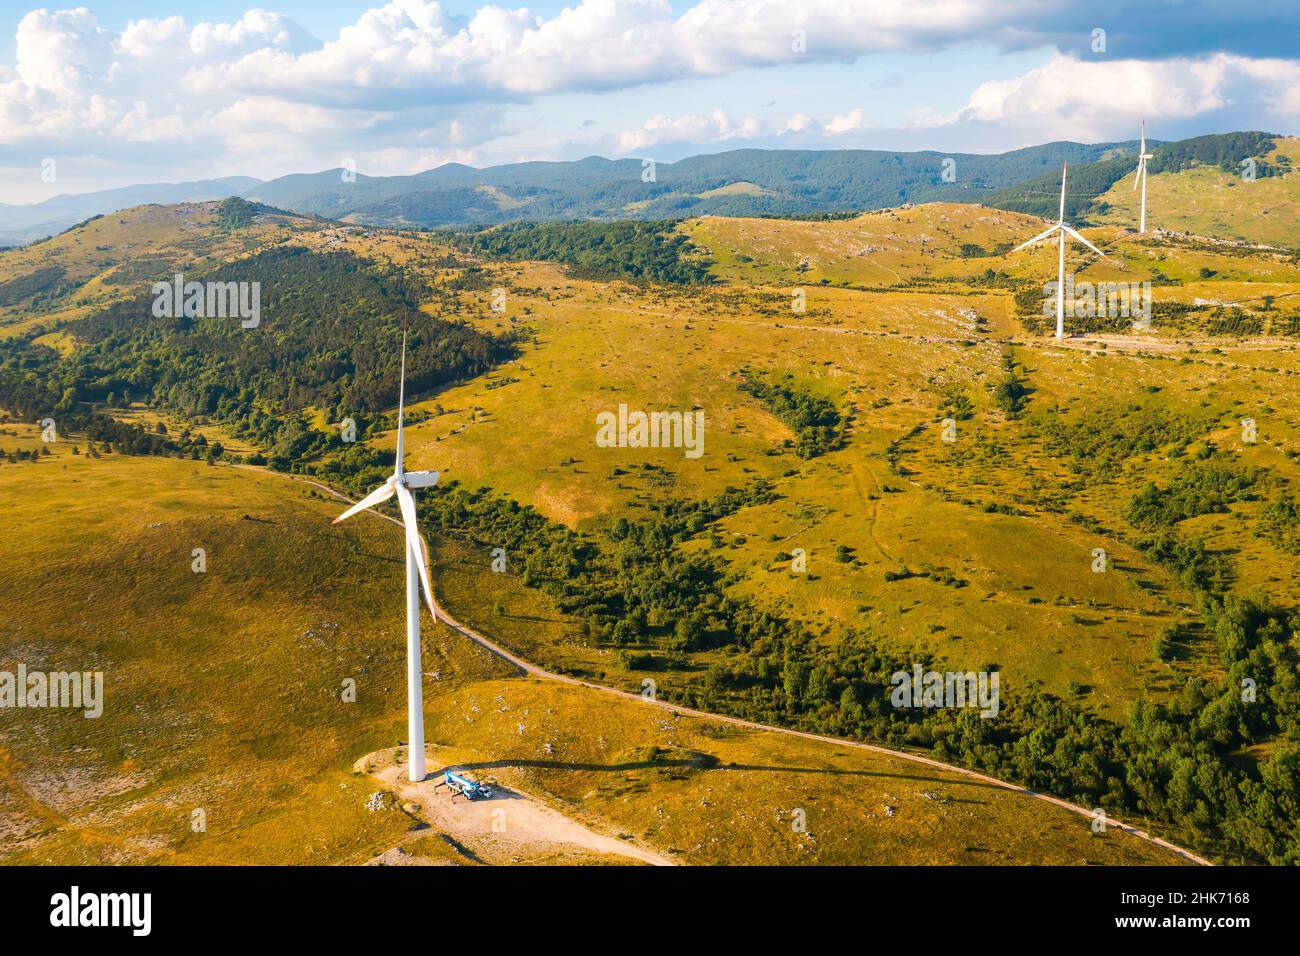 La stazione eolica con potenti macchine che producono energia pulita opera su pendii ricoperti di foreste e cespugli sotto la vista aerea del cielo nuvoloso Foto Stock